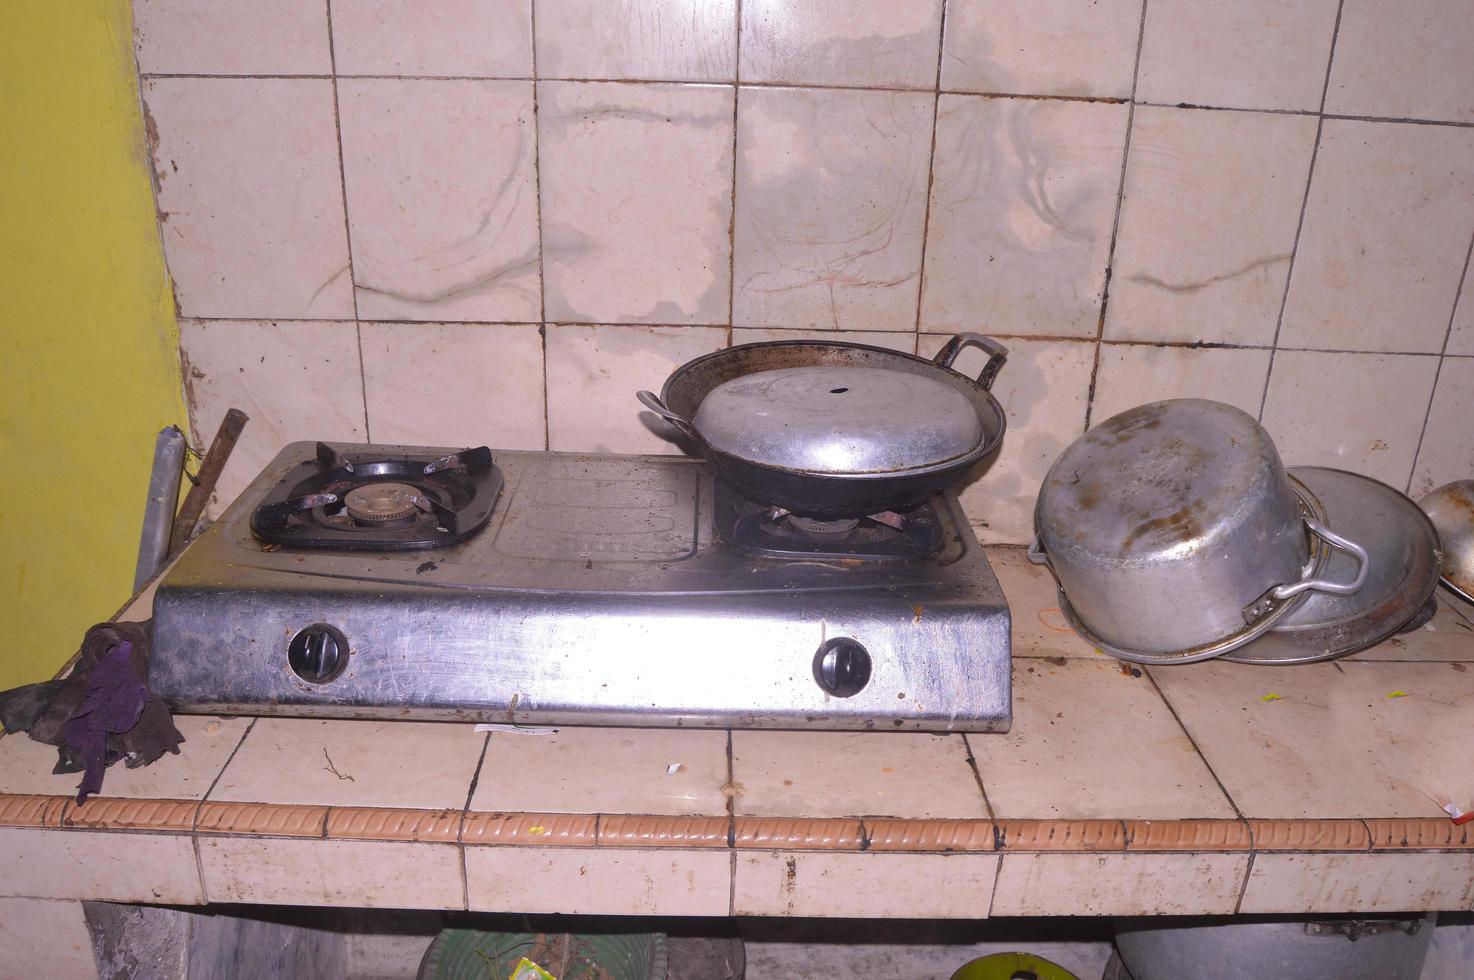 vue de la cuisine avec poêles et casseroles existants photo